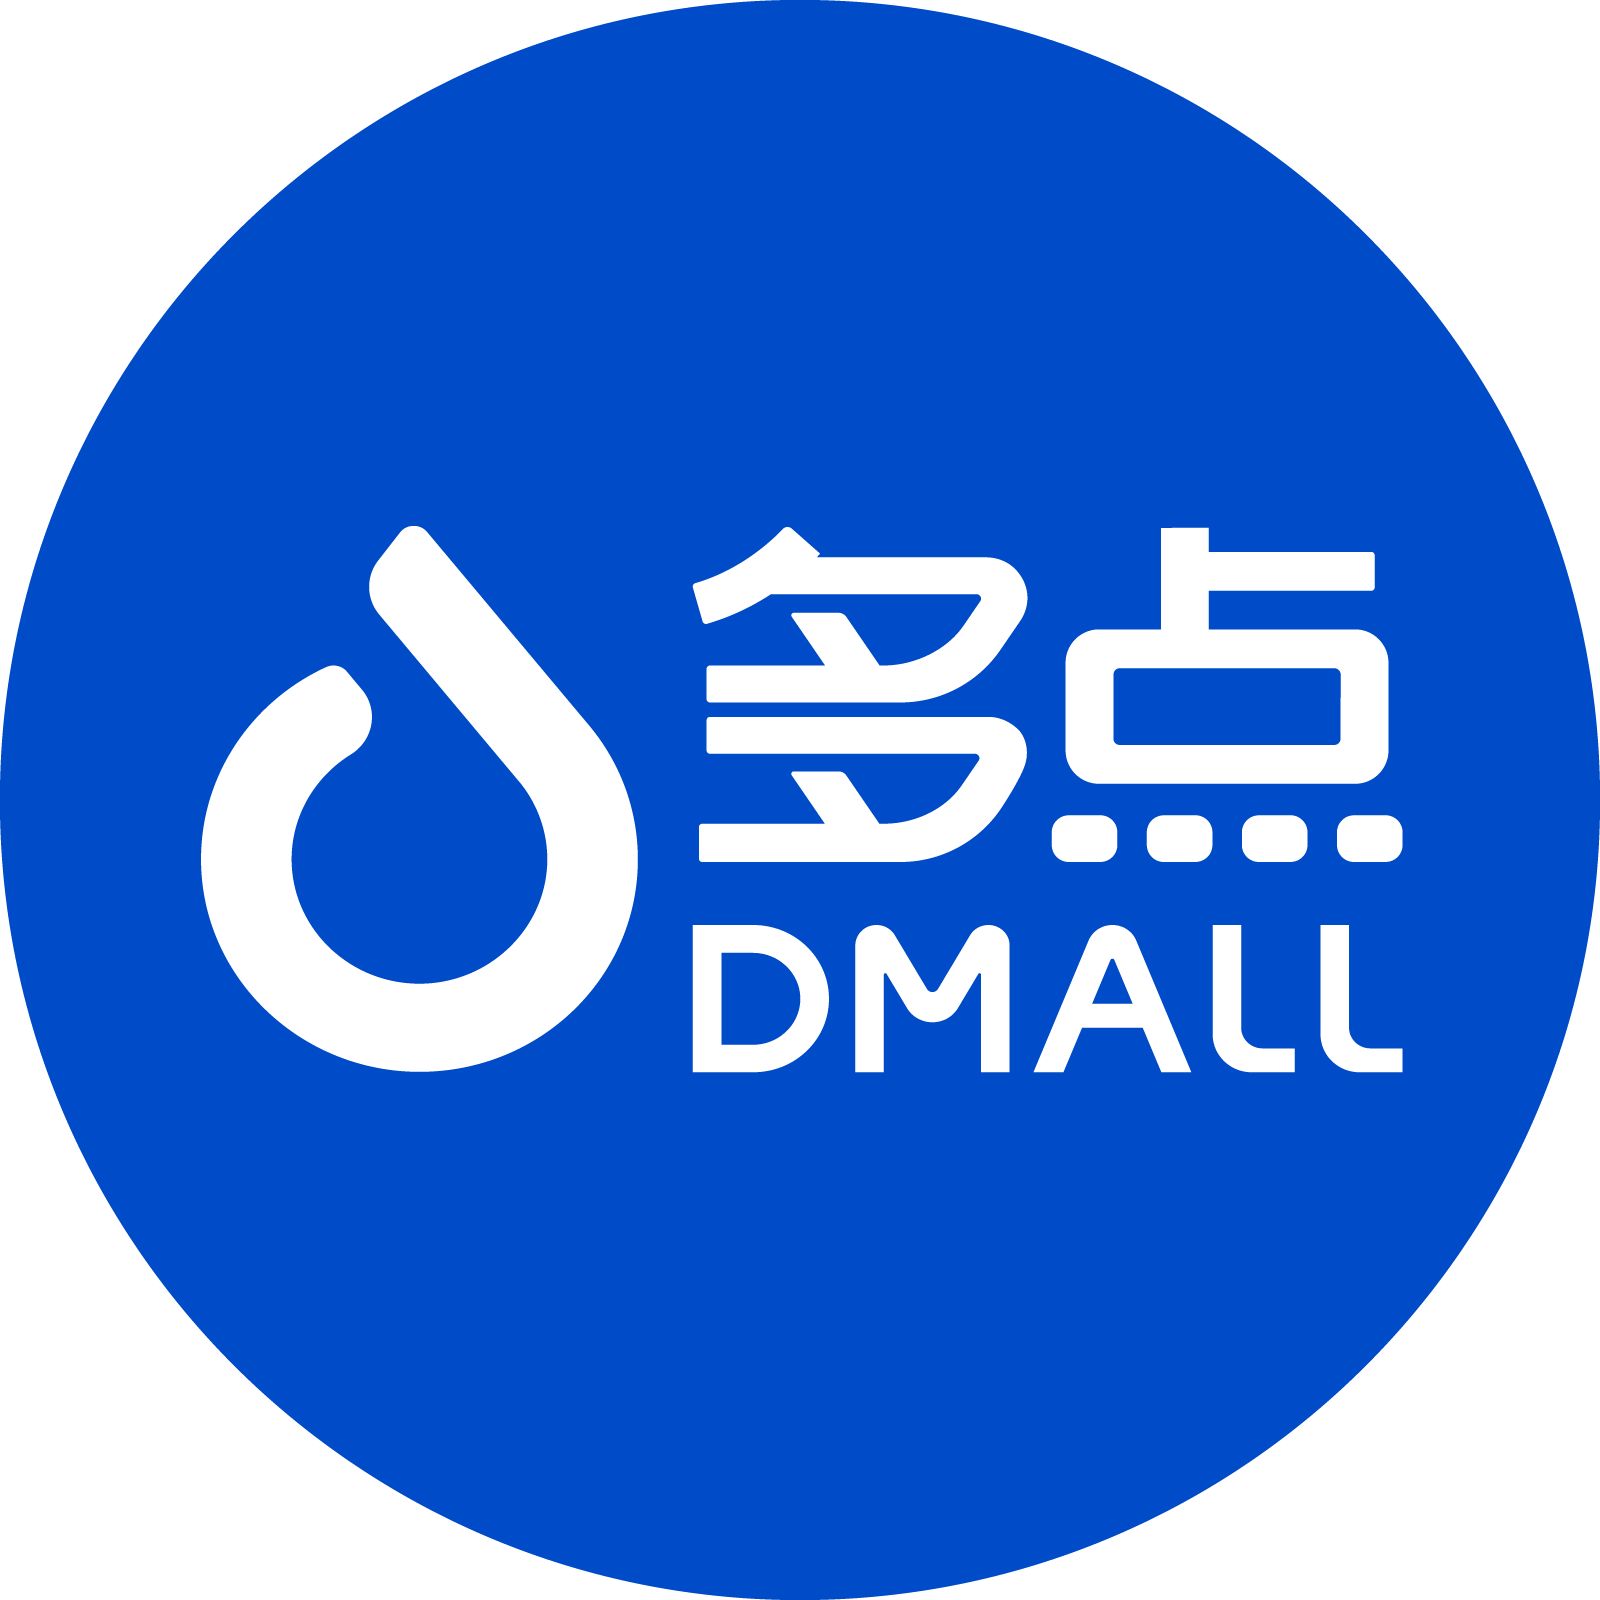 Dmall logo